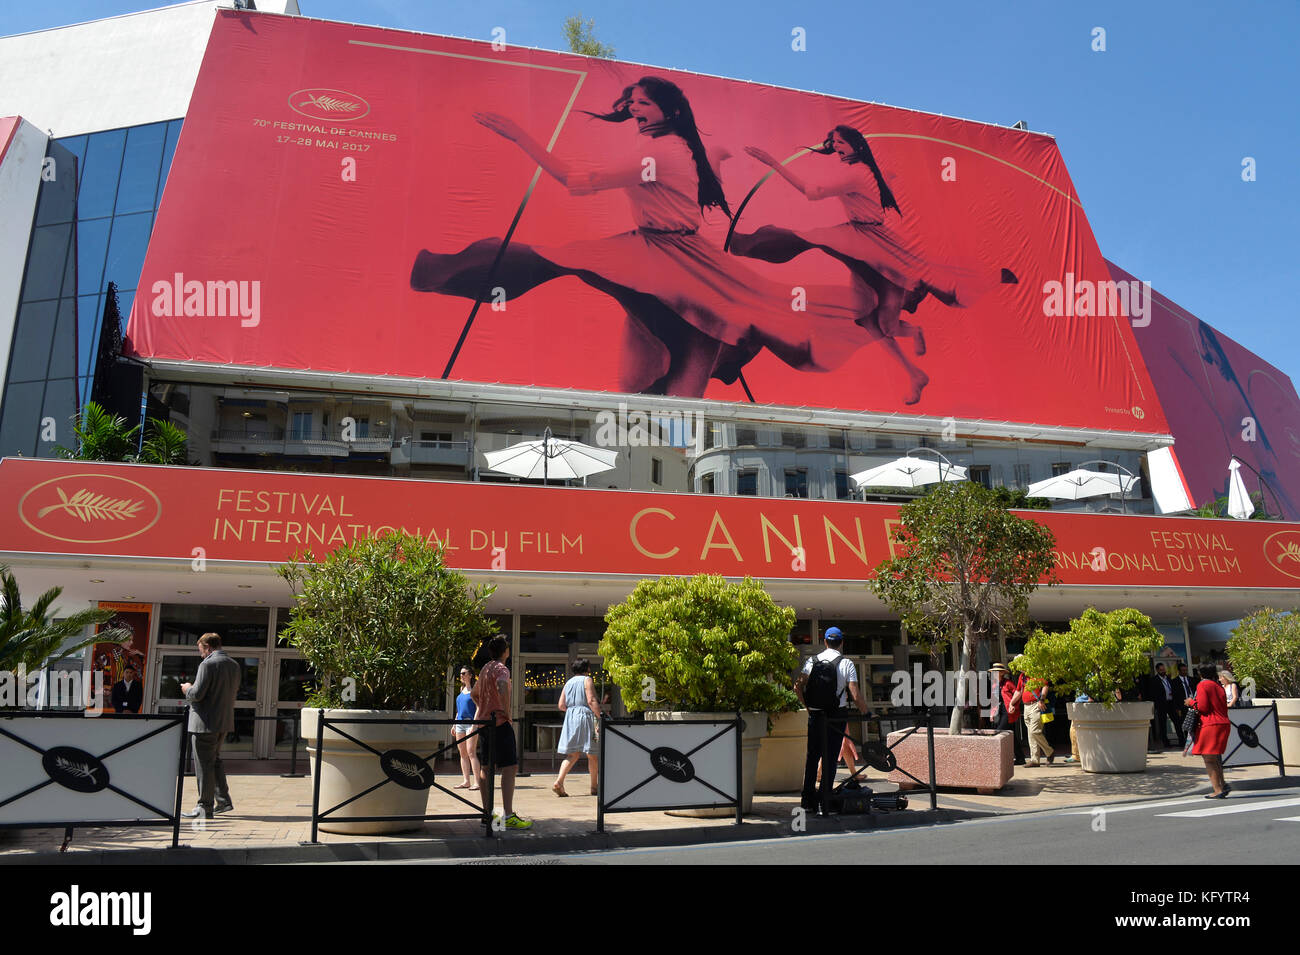 Le palais des festivals et des congrès" centre de congrès avec une affiche pour la 70e édition du festival du film de Cannes 2017 sur 0516. Banque D'Images